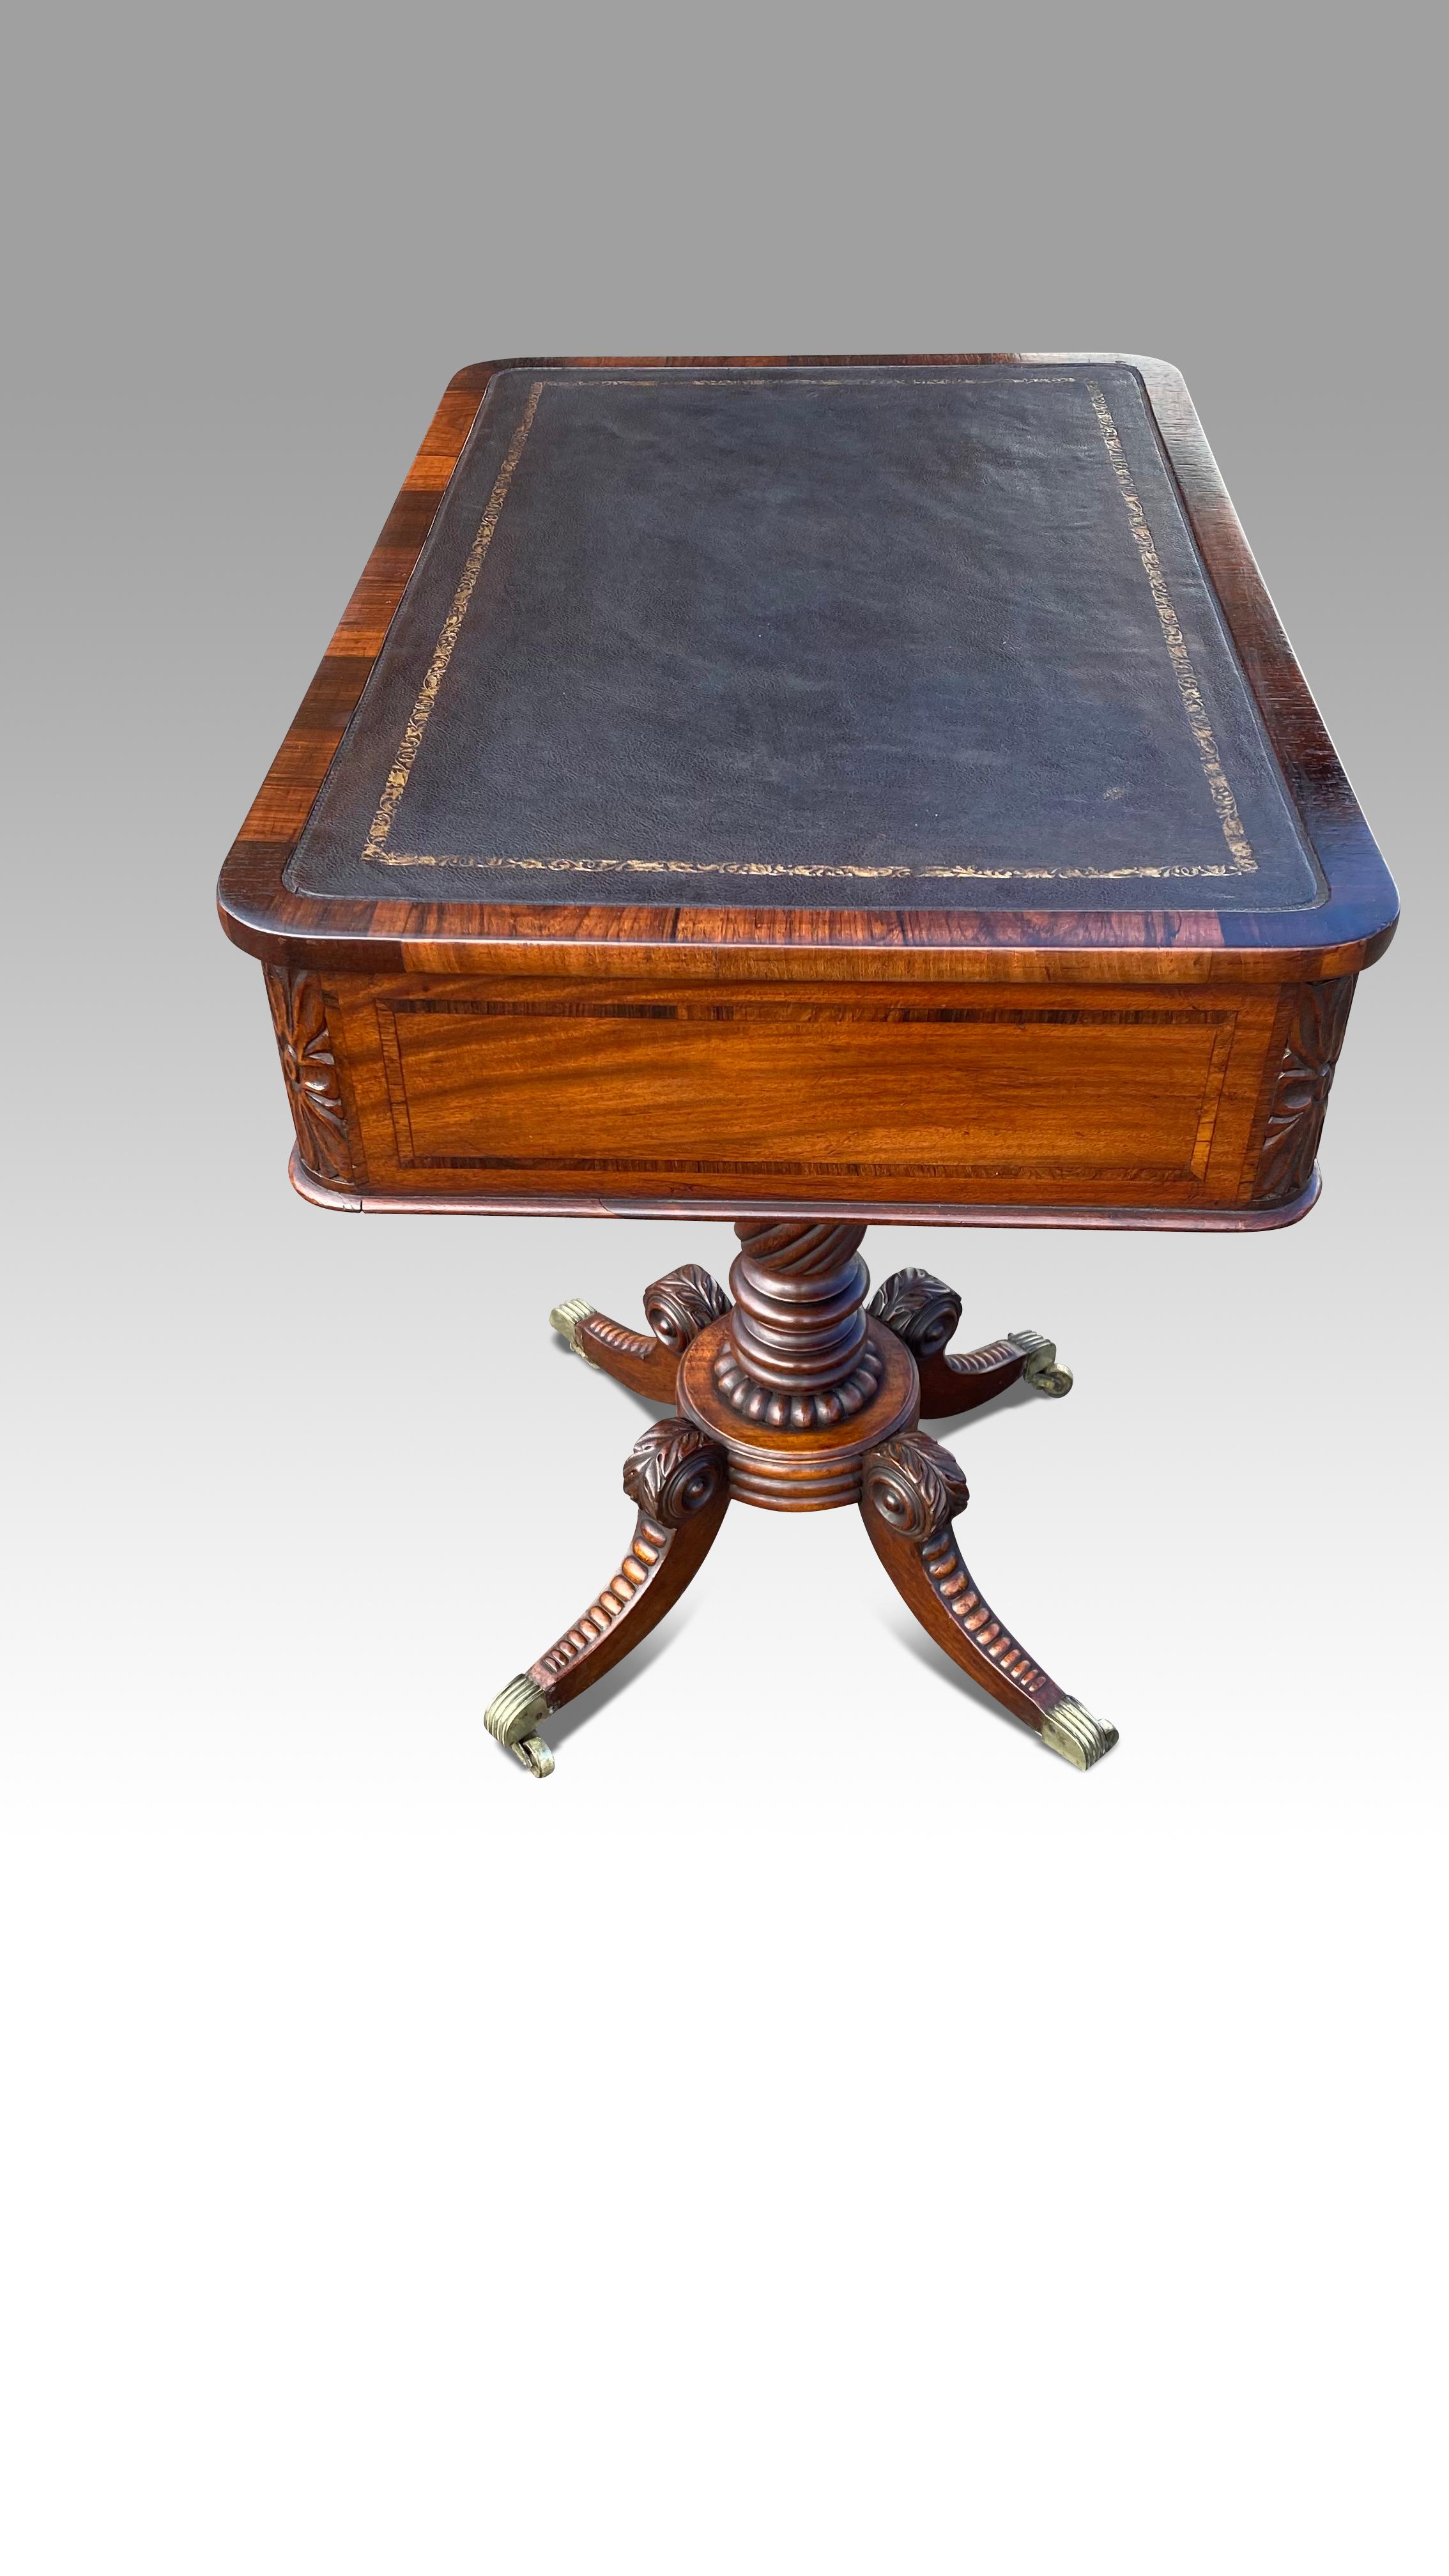 Cette magnifique table d'écriture avec un seul tiroir  dissimulant une surface d'écriture coulissante doublée de cuir à l'intérieur d'une bordure en bois satiné.
La partie supérieure, doublée de cuir, est entourée d'une bande transversale en bois de